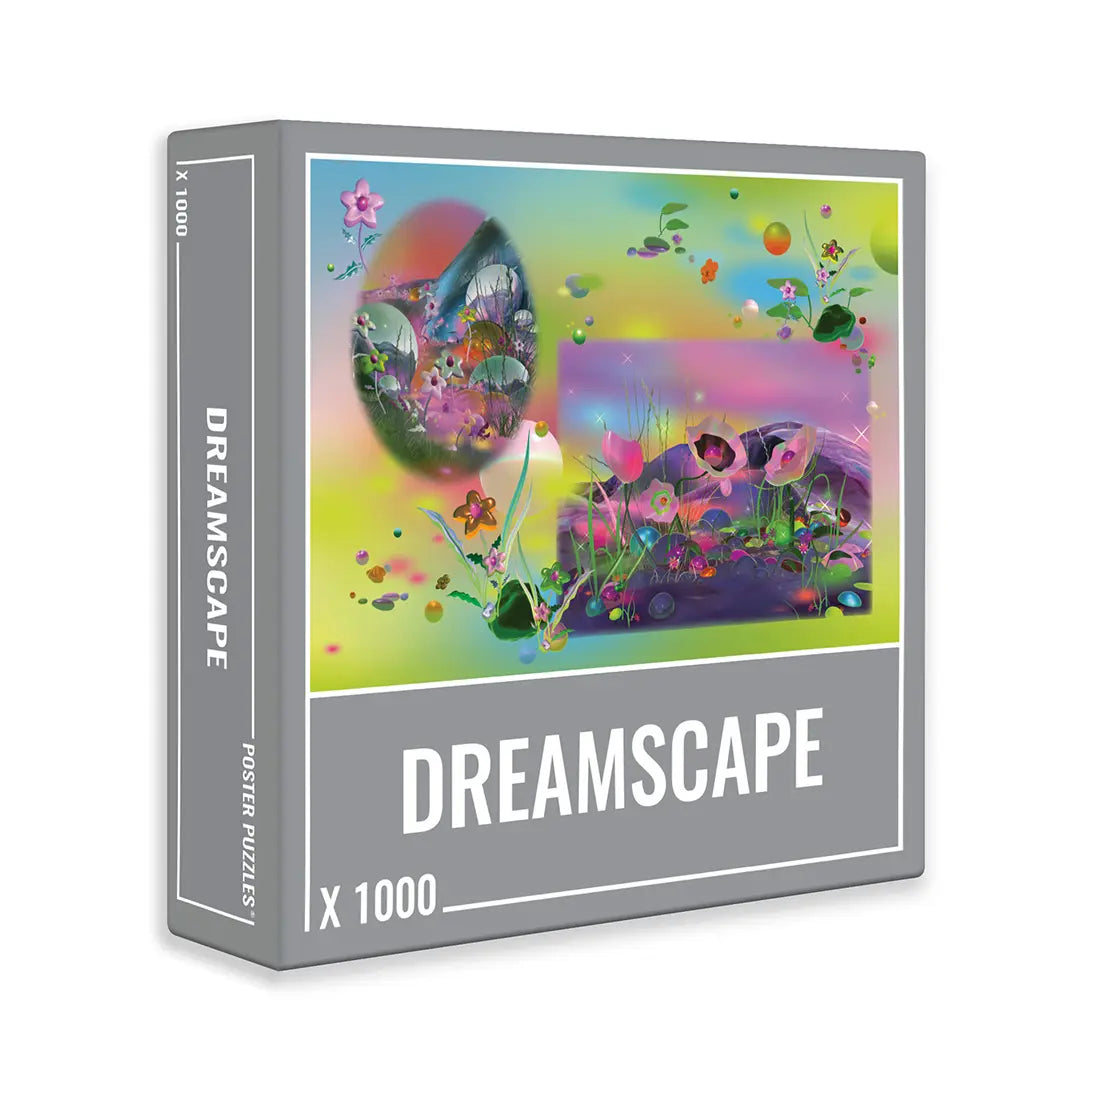 Dreamscape | 1,000 Piece Jigsaw Puzzle